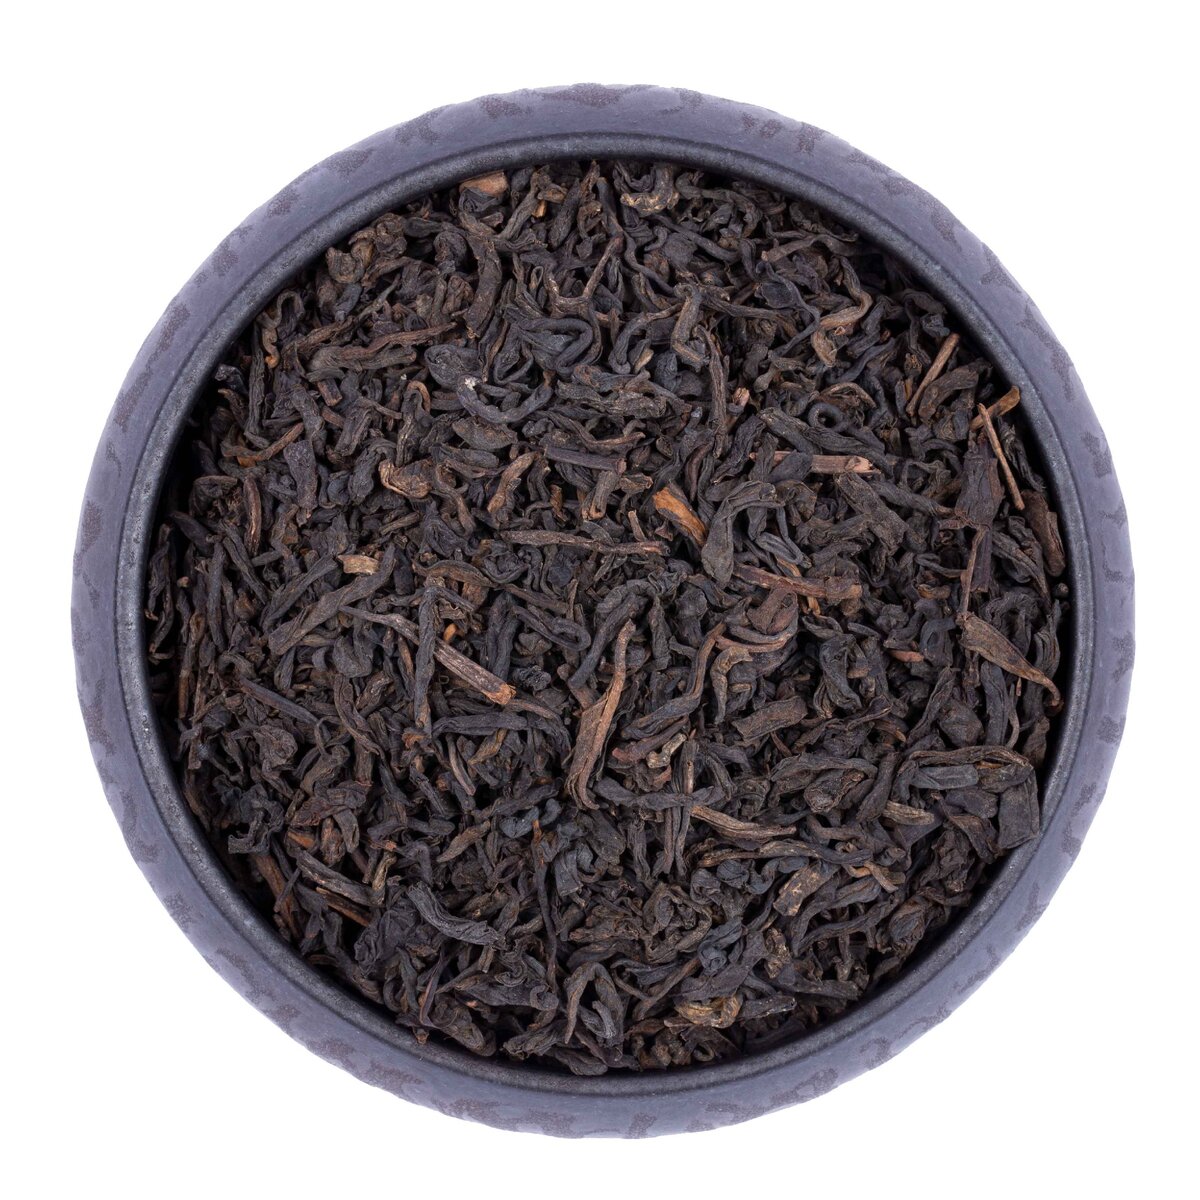 Черный чай "Рецепт 8272 Любао" от фабрики Чжунча, выдержан с 2013 года